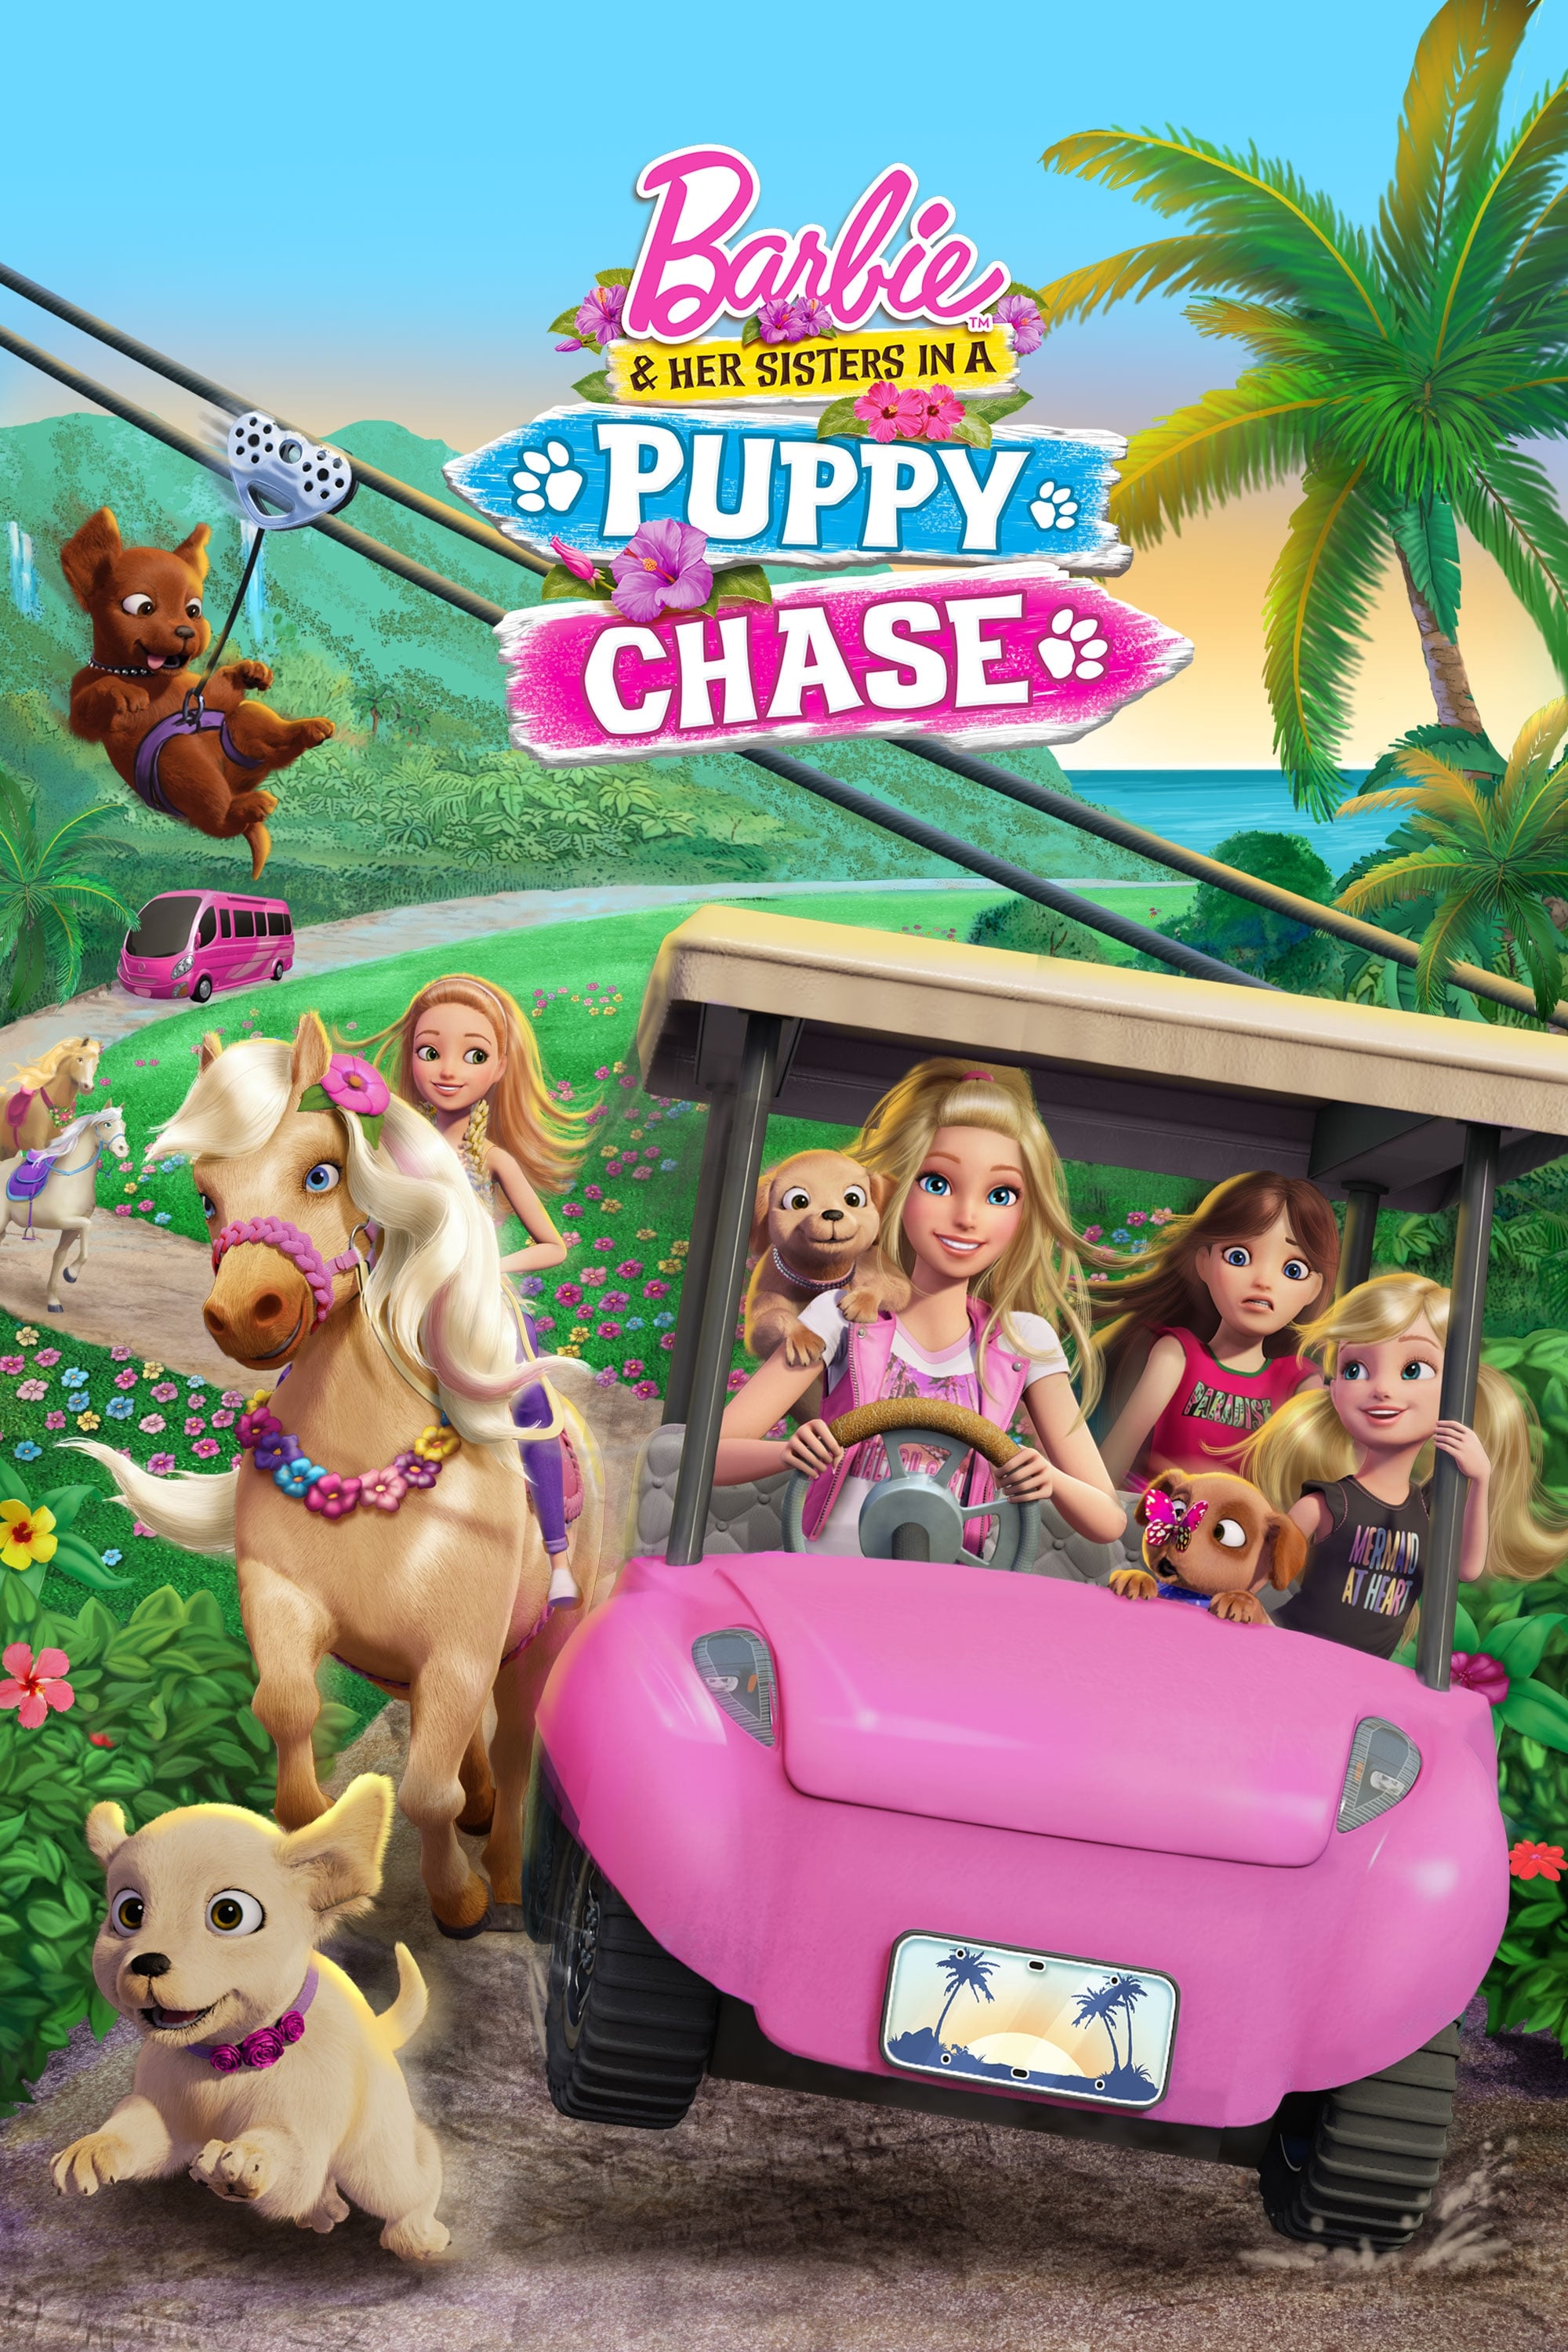 Caratula de Barbie & Her Sisters in a Puppy Chase (Barbie y sus hermanas: En busca de los perritos) 